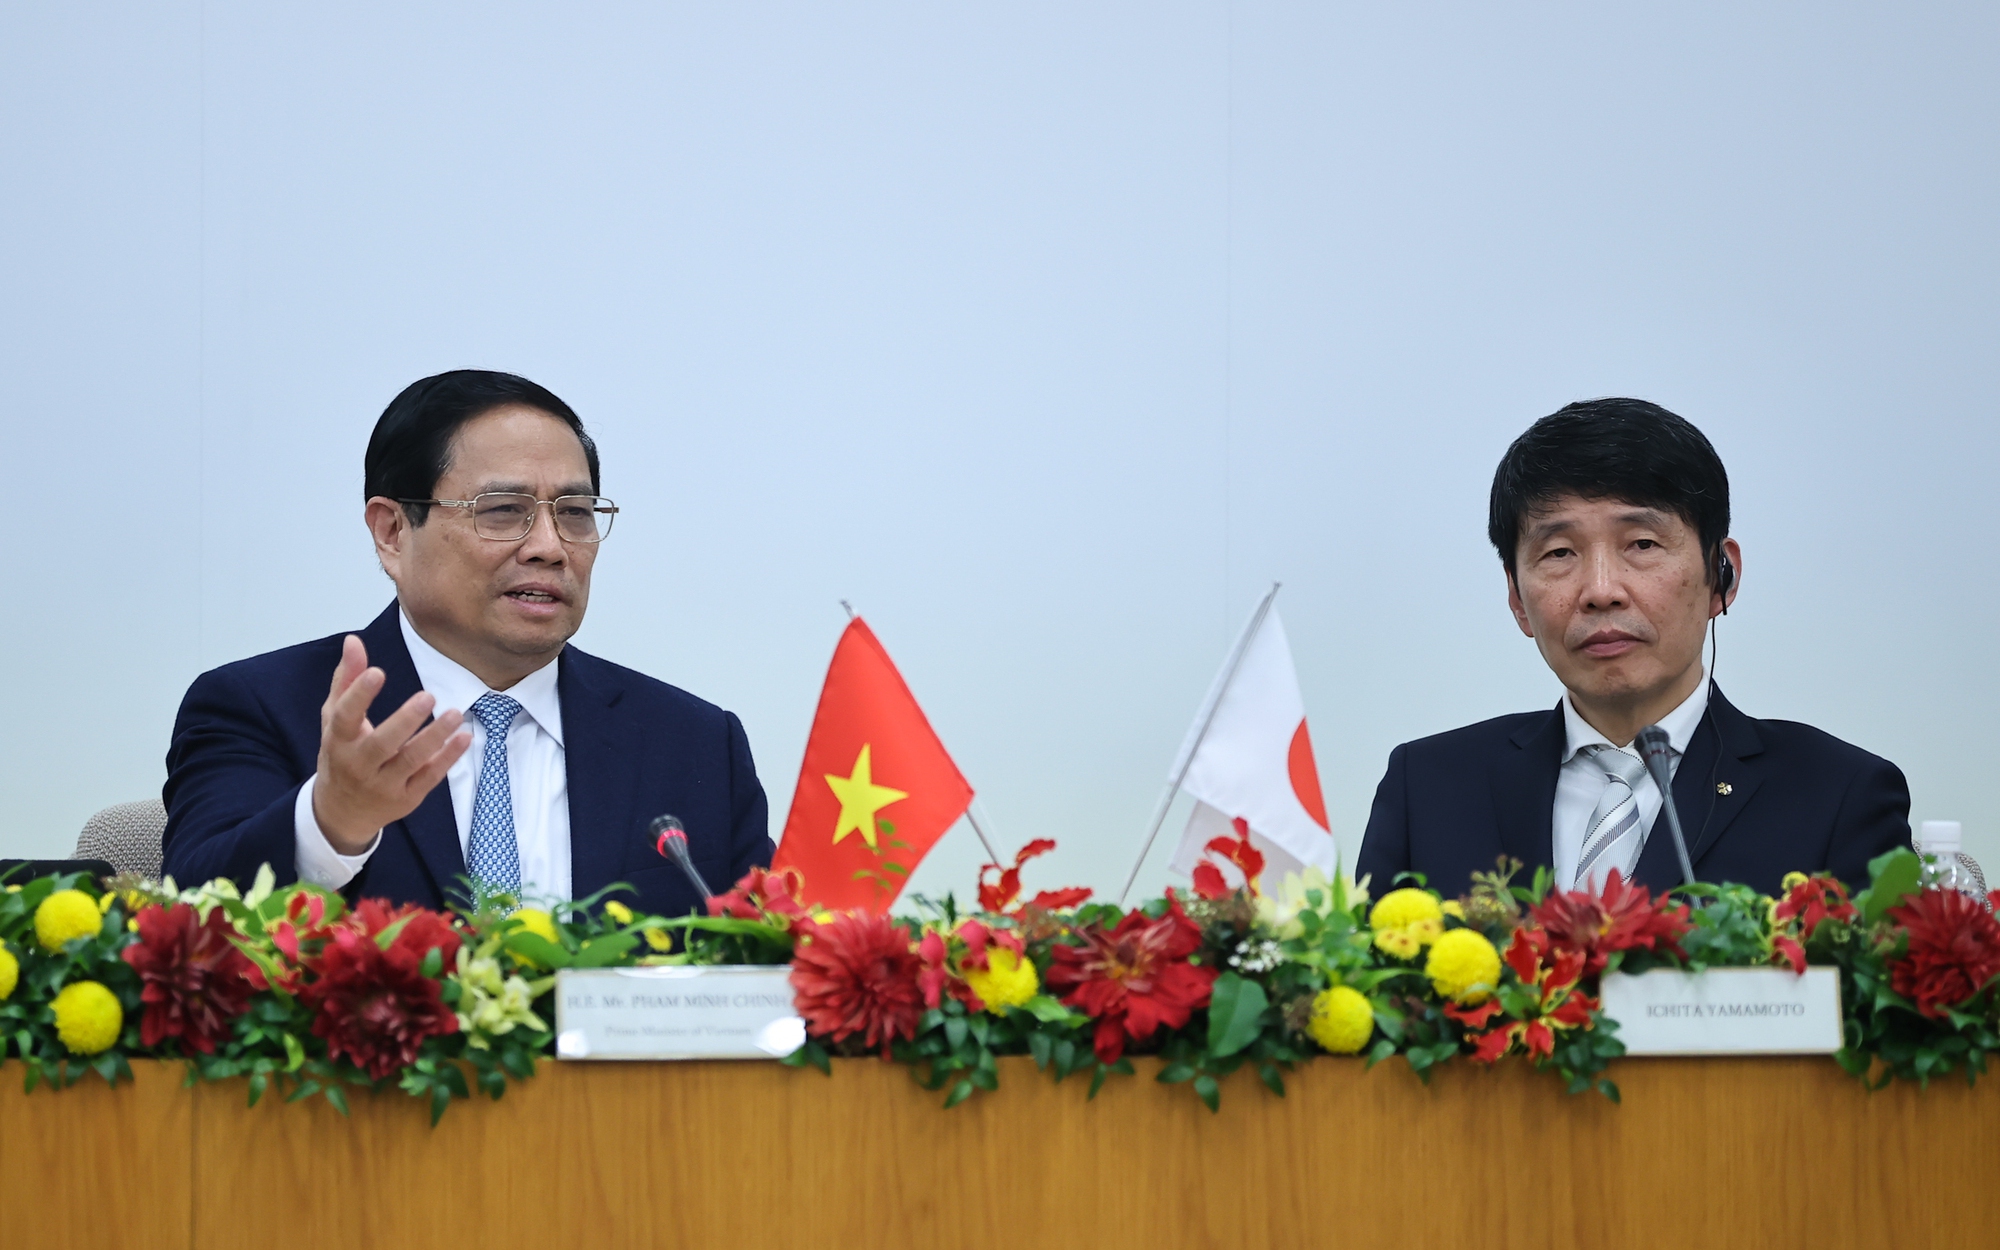 Thủ tướng thúc đẩy đầu tư chất lượng cao từ trung tâm công nghiệp hàng đầu Nhật Bản